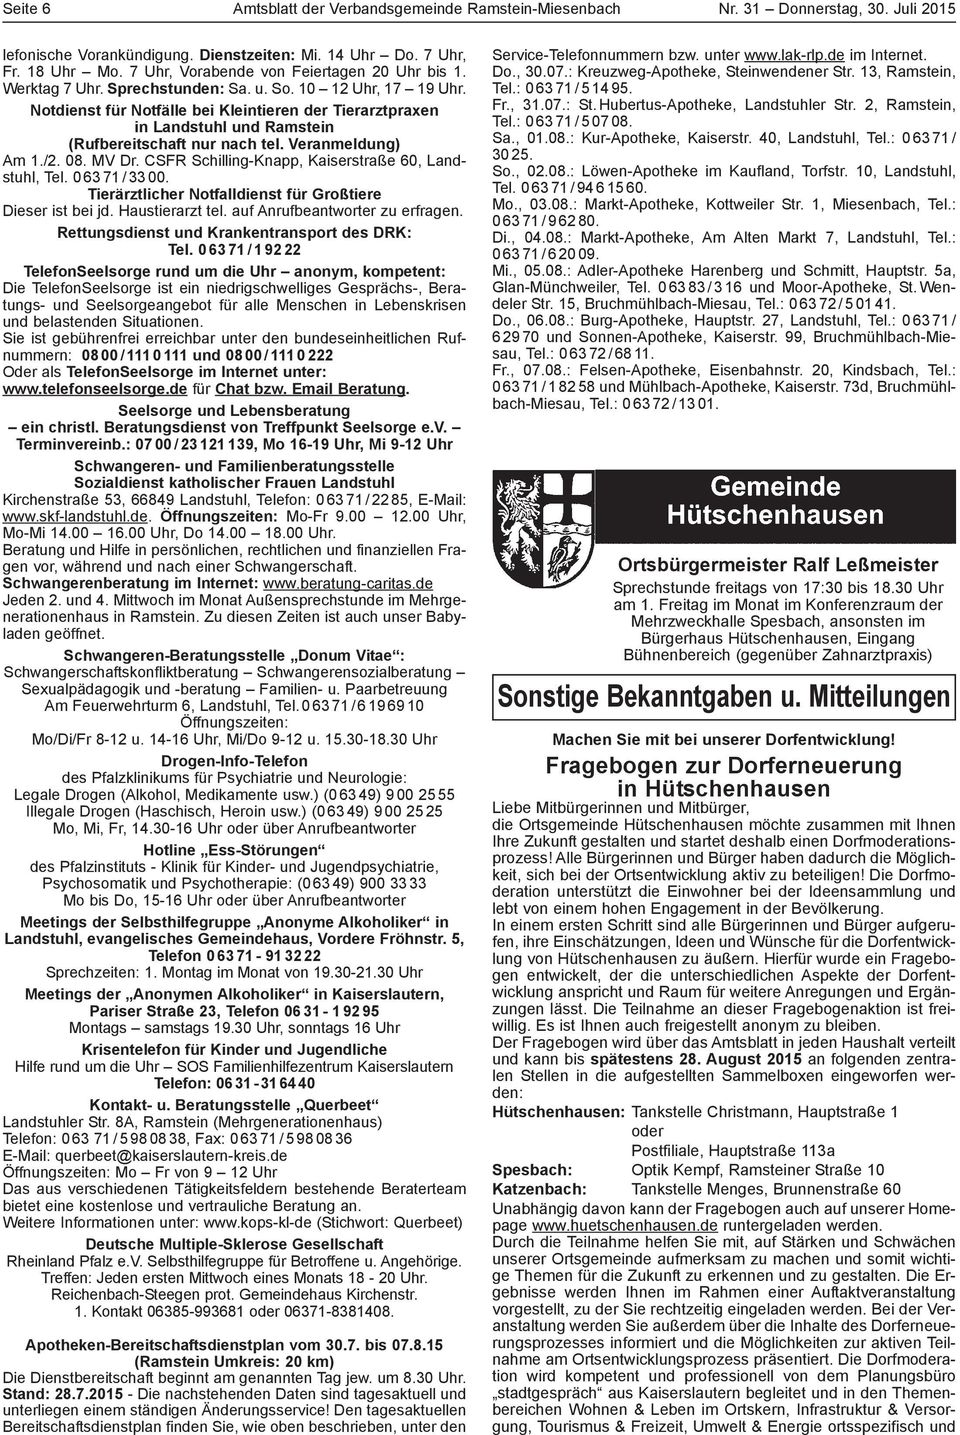 Notdienst für Notfälle bei Kleintieren der Tierarztpraxen in Landstuhl und Ramstein (Rufbereitschaft nur nach tel. Veranmeldung) Am 1./2. 08. MV Dr.